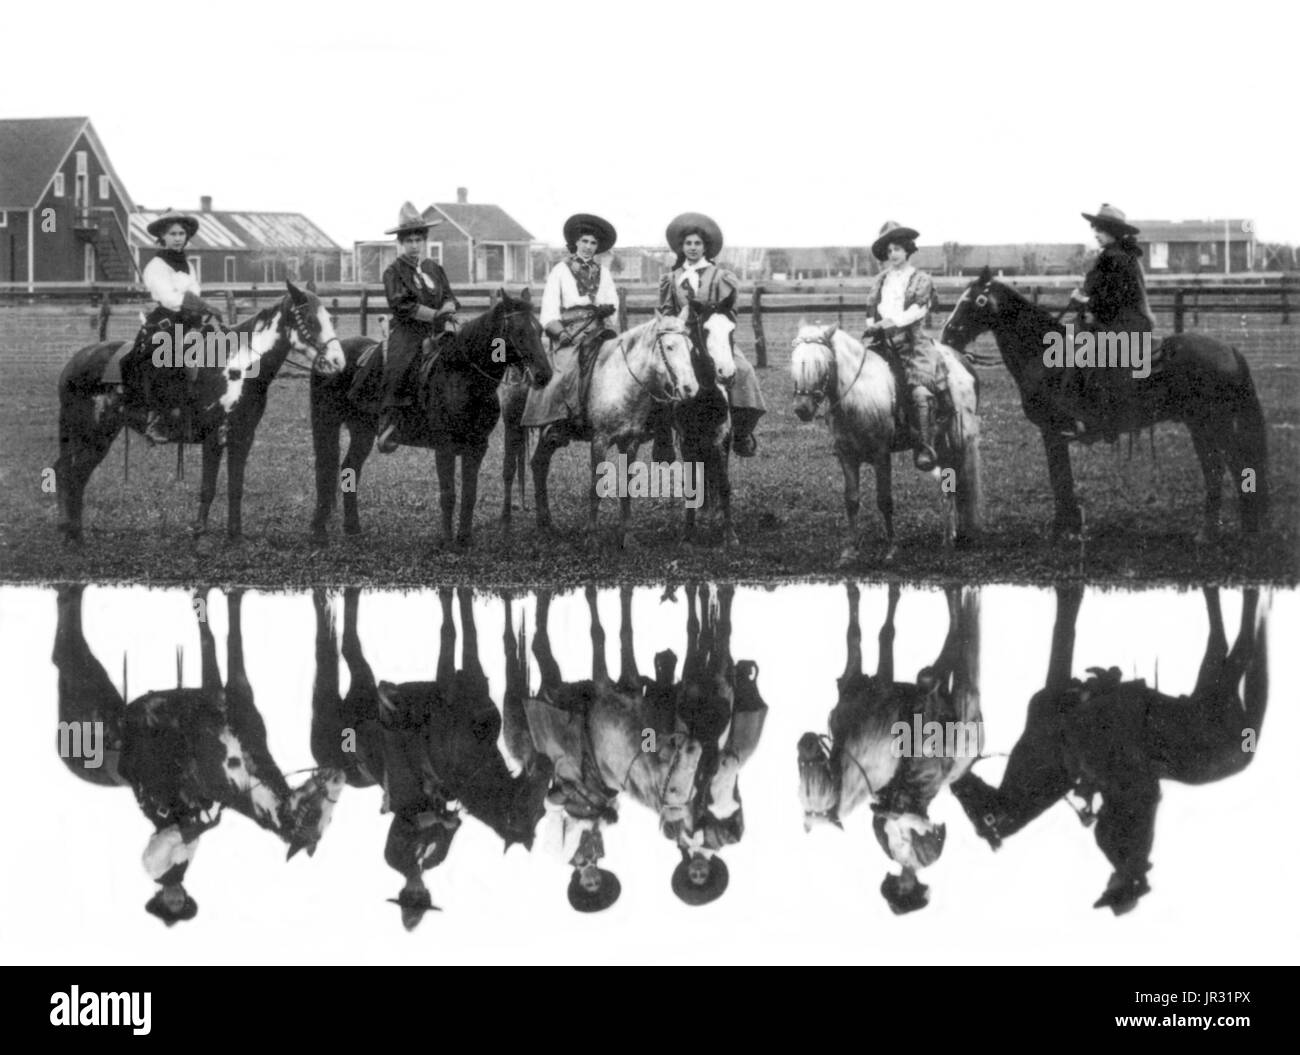 El Miller Brothers 101 Ranch es un rancho ganadero de 110.000 acres en el territorio indio de Oklahoma antes de la estadidad, fundada por el coronel George Washington Miller, un veterano del ejército confederado, en 1893. Los 101 Ranch fue la cuna de las 101 Ranch Wild West Show y uno de los primeros puntos focales del aceite rush en el noreste de Oklahoma. Fue una de las más grandes granjas y ranchos diversificados en América en el momento. Los molineros' importante vecino Gordon W. Lillie, quien actuó como Pawnee Bill, motivó a los molineros para producir una Wild West Show propio. Los molineros hizo su transición de putti Foto de stock